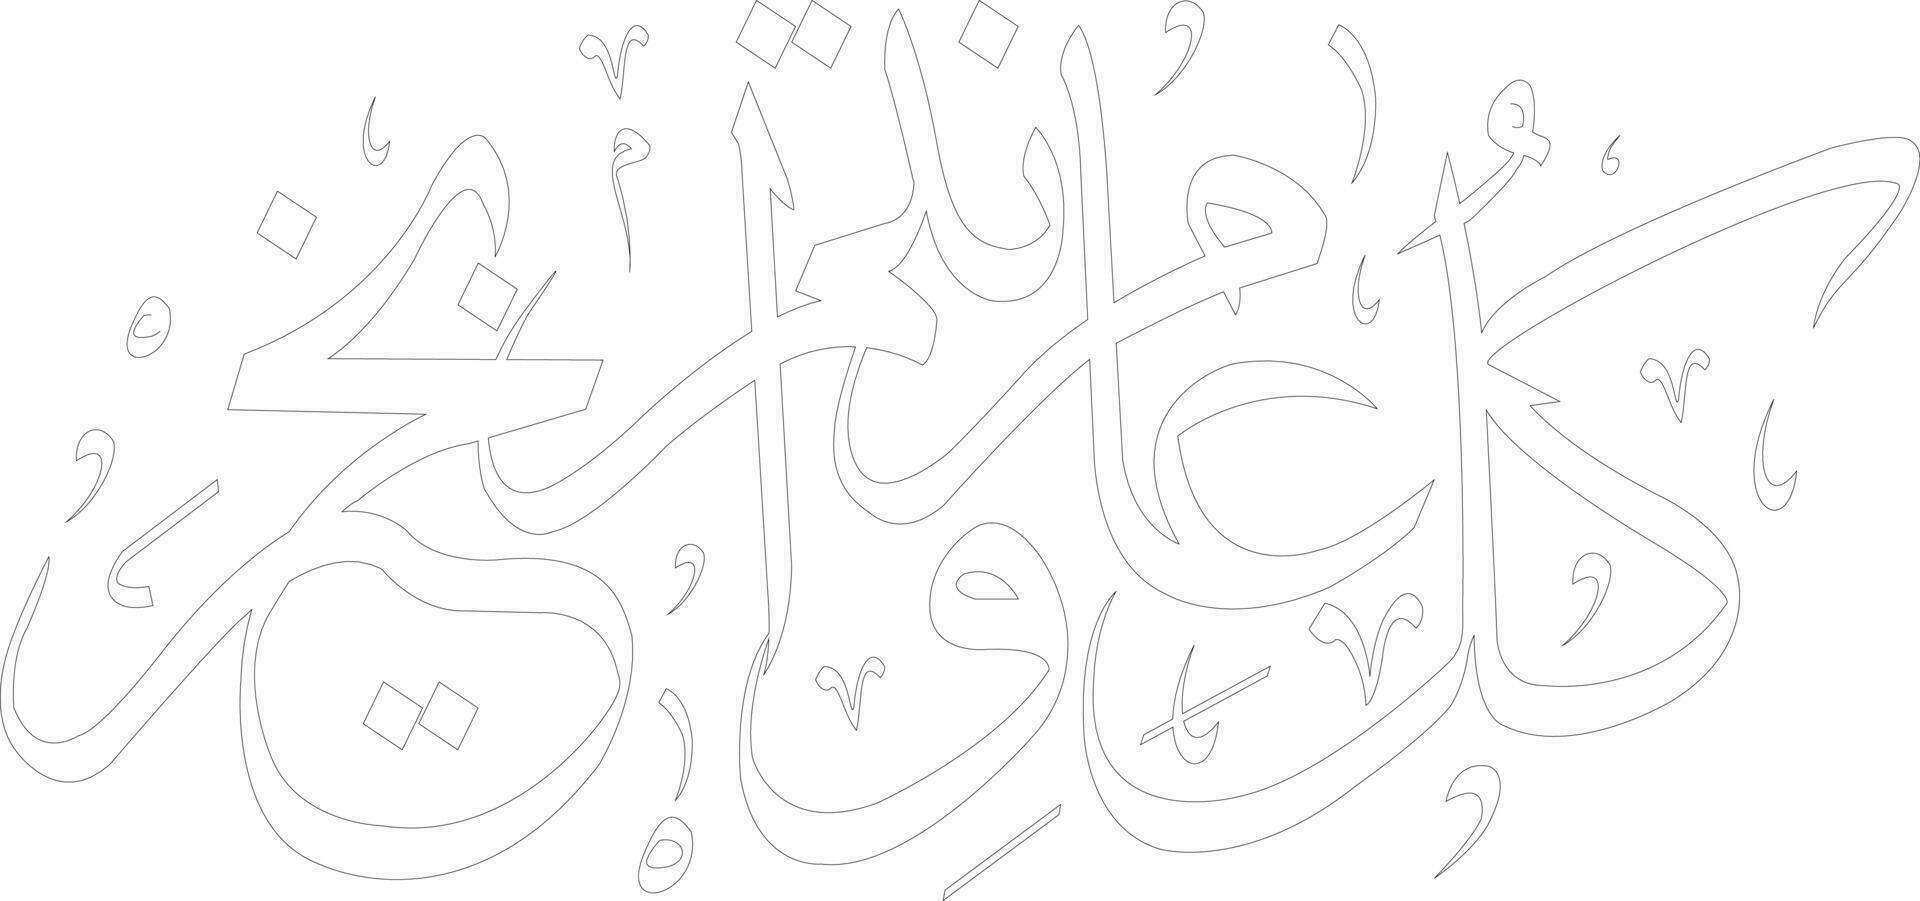 el frase contento eid kula equipo deseo Bikhayr con blanco color escrito en Arábica fuente diwani guión vector